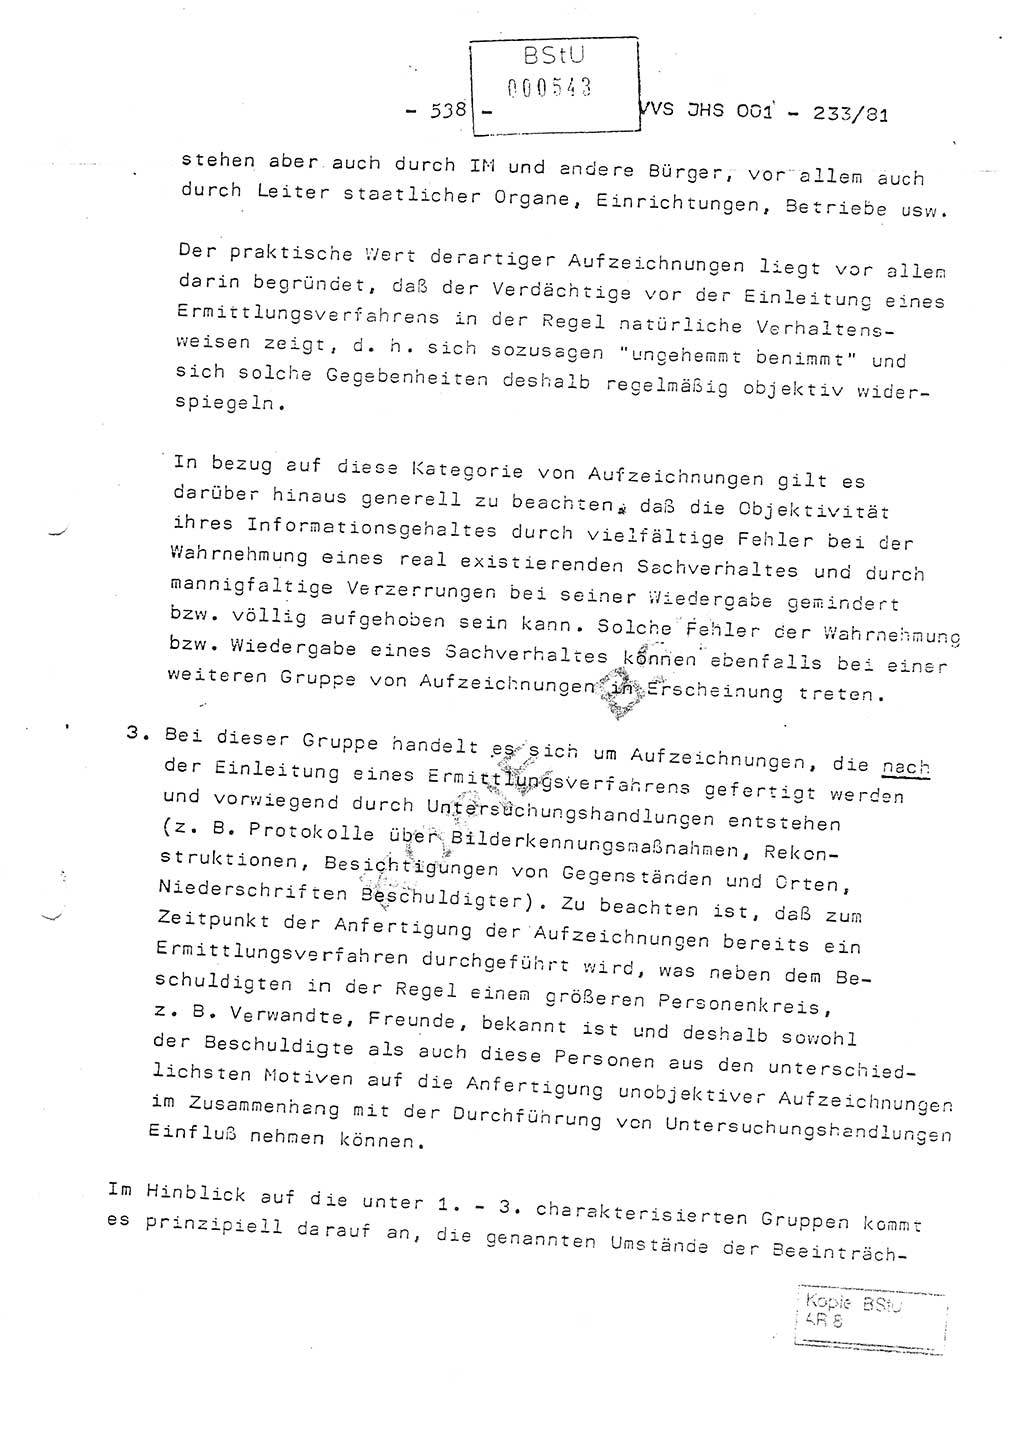 Dissertation Oberstleutnant Horst Zank (JHS), Oberstleutnant Dr. Karl-Heinz Knoblauch (JHS), Oberstleutnant Gustav-Adolf Kowalewski (HA Ⅸ), Oberstleutnant Wolfgang Plötner (HA Ⅸ), Ministerium für Staatssicherheit (MfS) [Deutsche Demokratische Republik (DDR)], Juristische Hochschule (JHS), Vertrauliche Verschlußsache (VVS) o001-233/81, Potsdam 1981, Blatt 538 (Diss. MfS DDR JHS VVS o001-233/81 1981, Bl. 538)